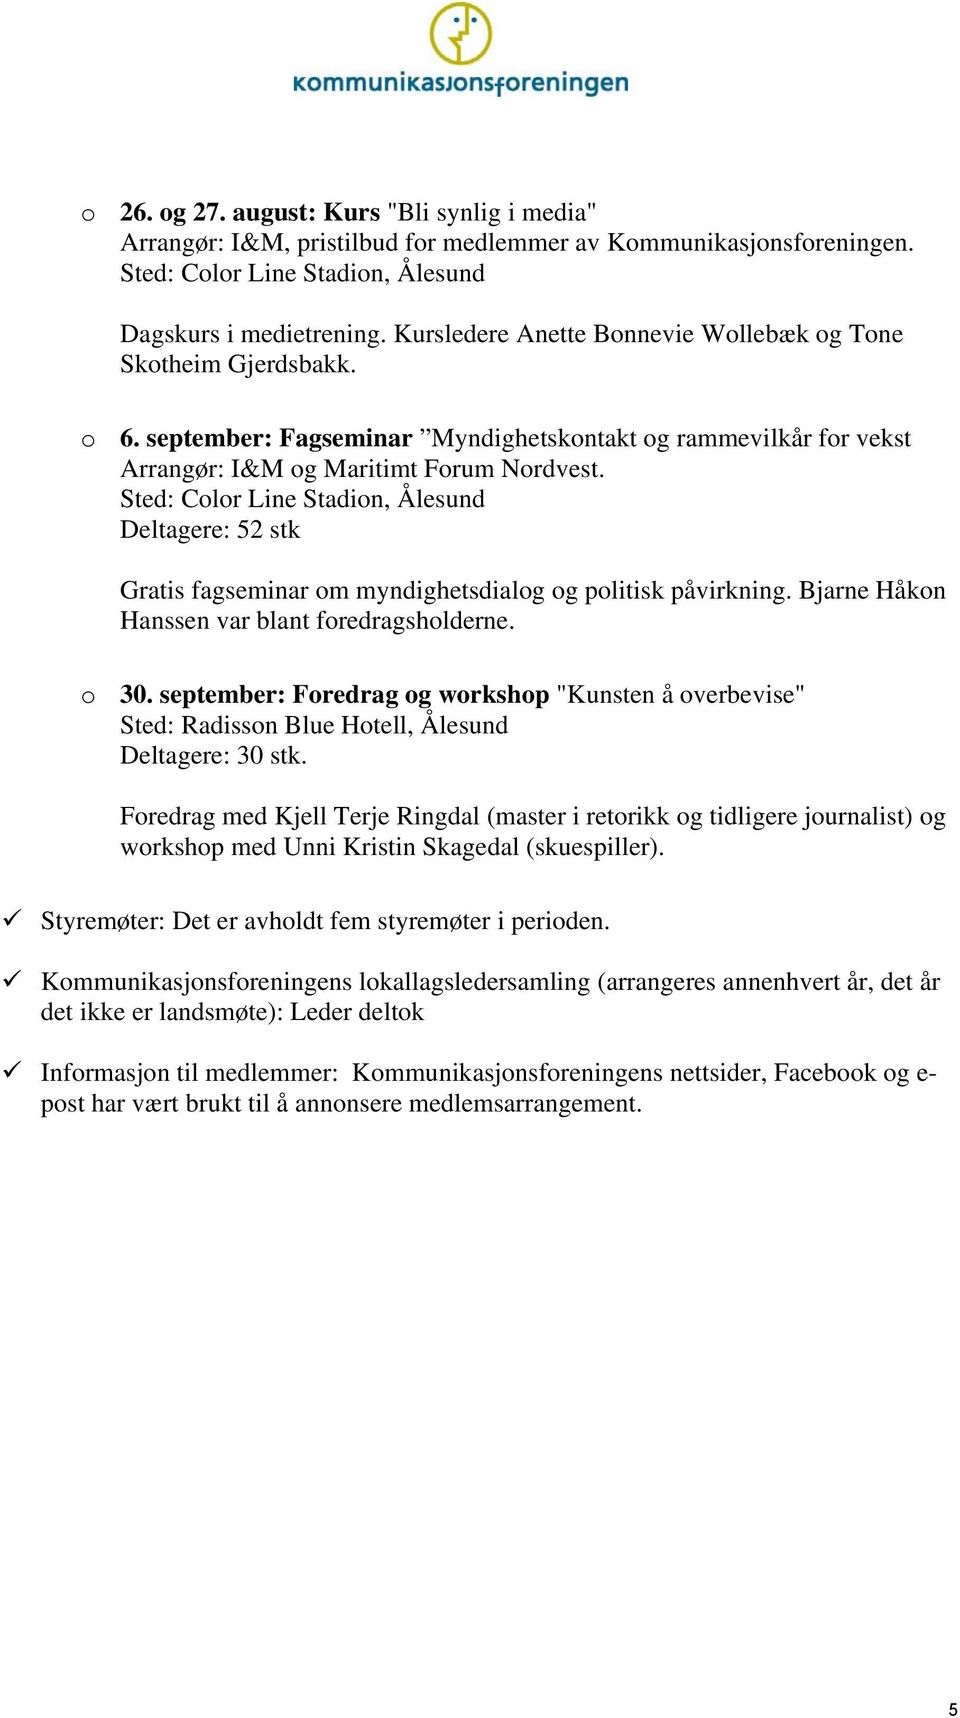 Sted: Clr Line Stadin, Ålesund Deltagere: 52 stk Gratis fagseminar m myndighetsdialg g plitisk påvirkning. Bjarne Håkn Hanssen var blant fredragshlderne. 30.